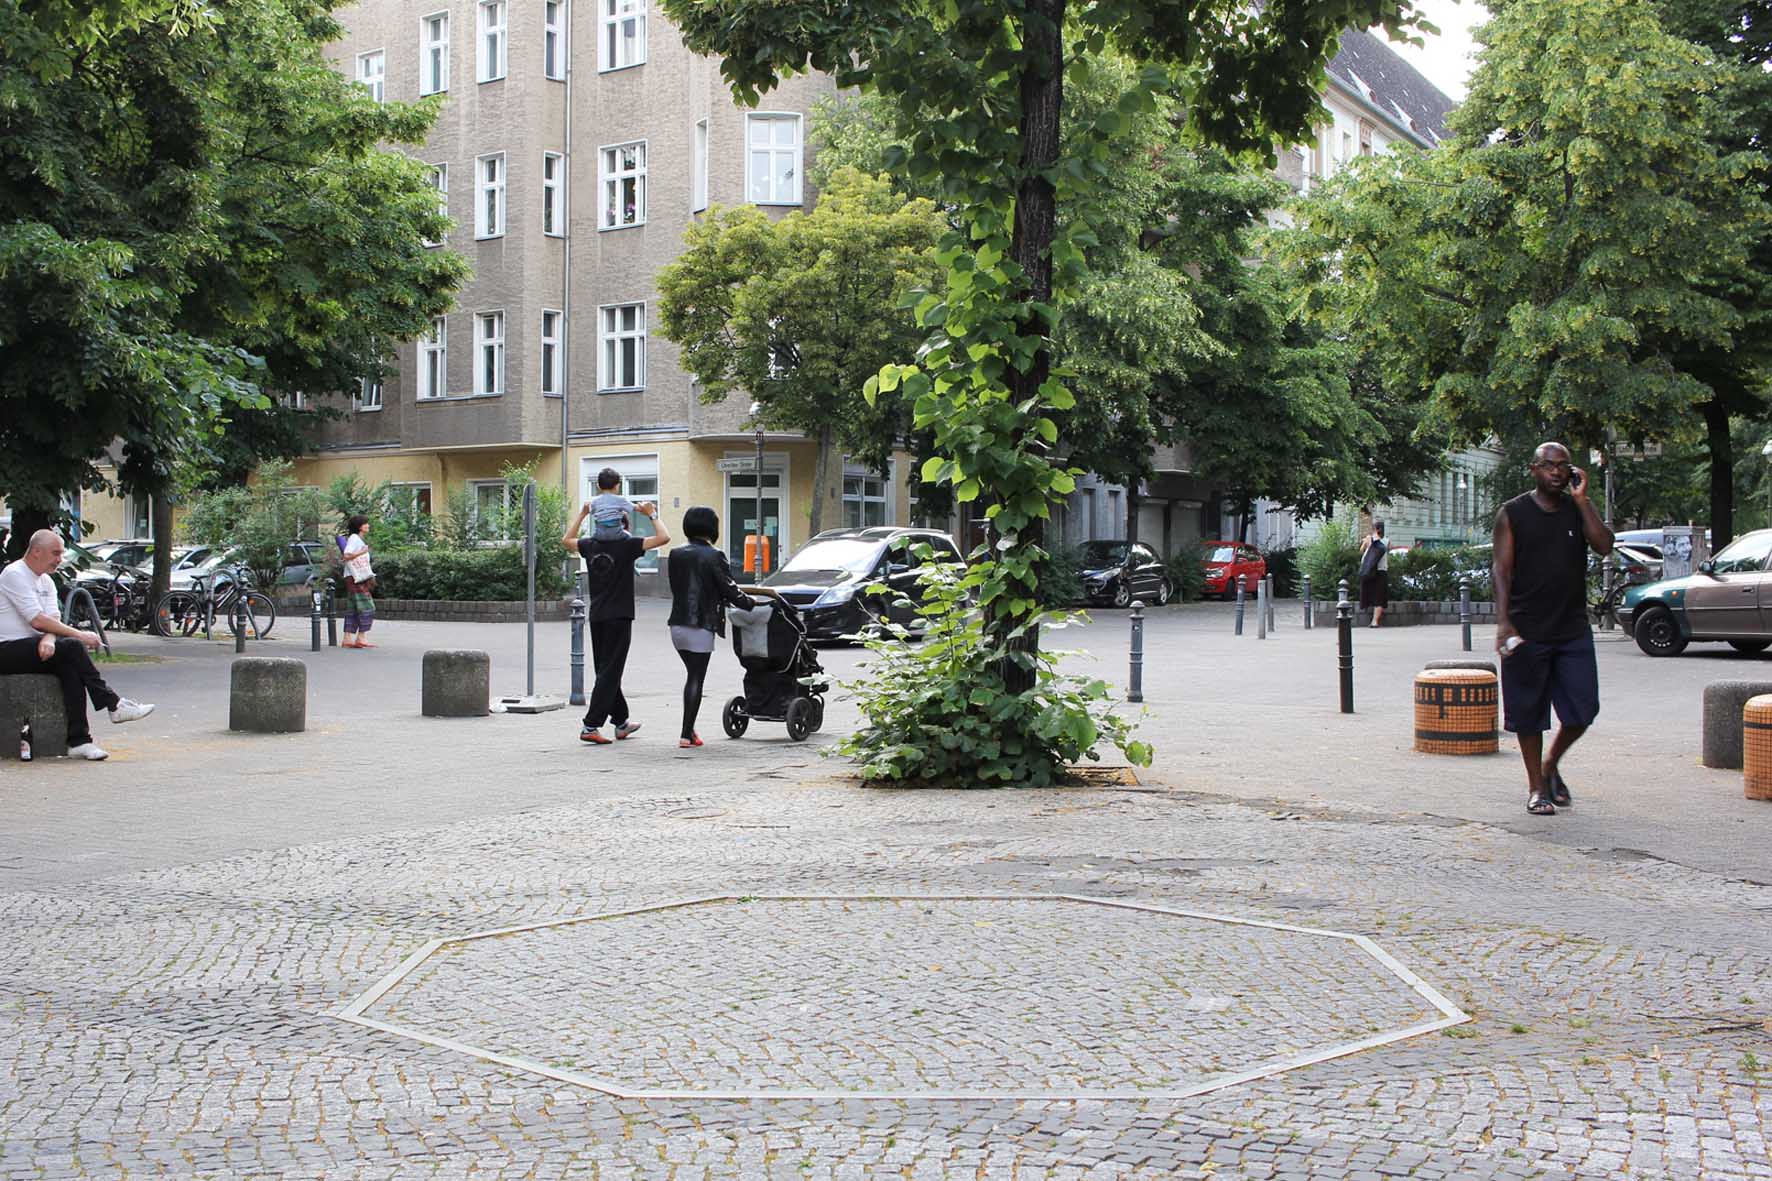 Malplaquetstraße ein achteckiger Metallriss auf dem Boden, markiert den ehemaligen Standort ein Café Achteck - Berlin's klassischen grün-lackierten gusseisernen Bedürfnisanstalten aus dem 19. Jahrhundert